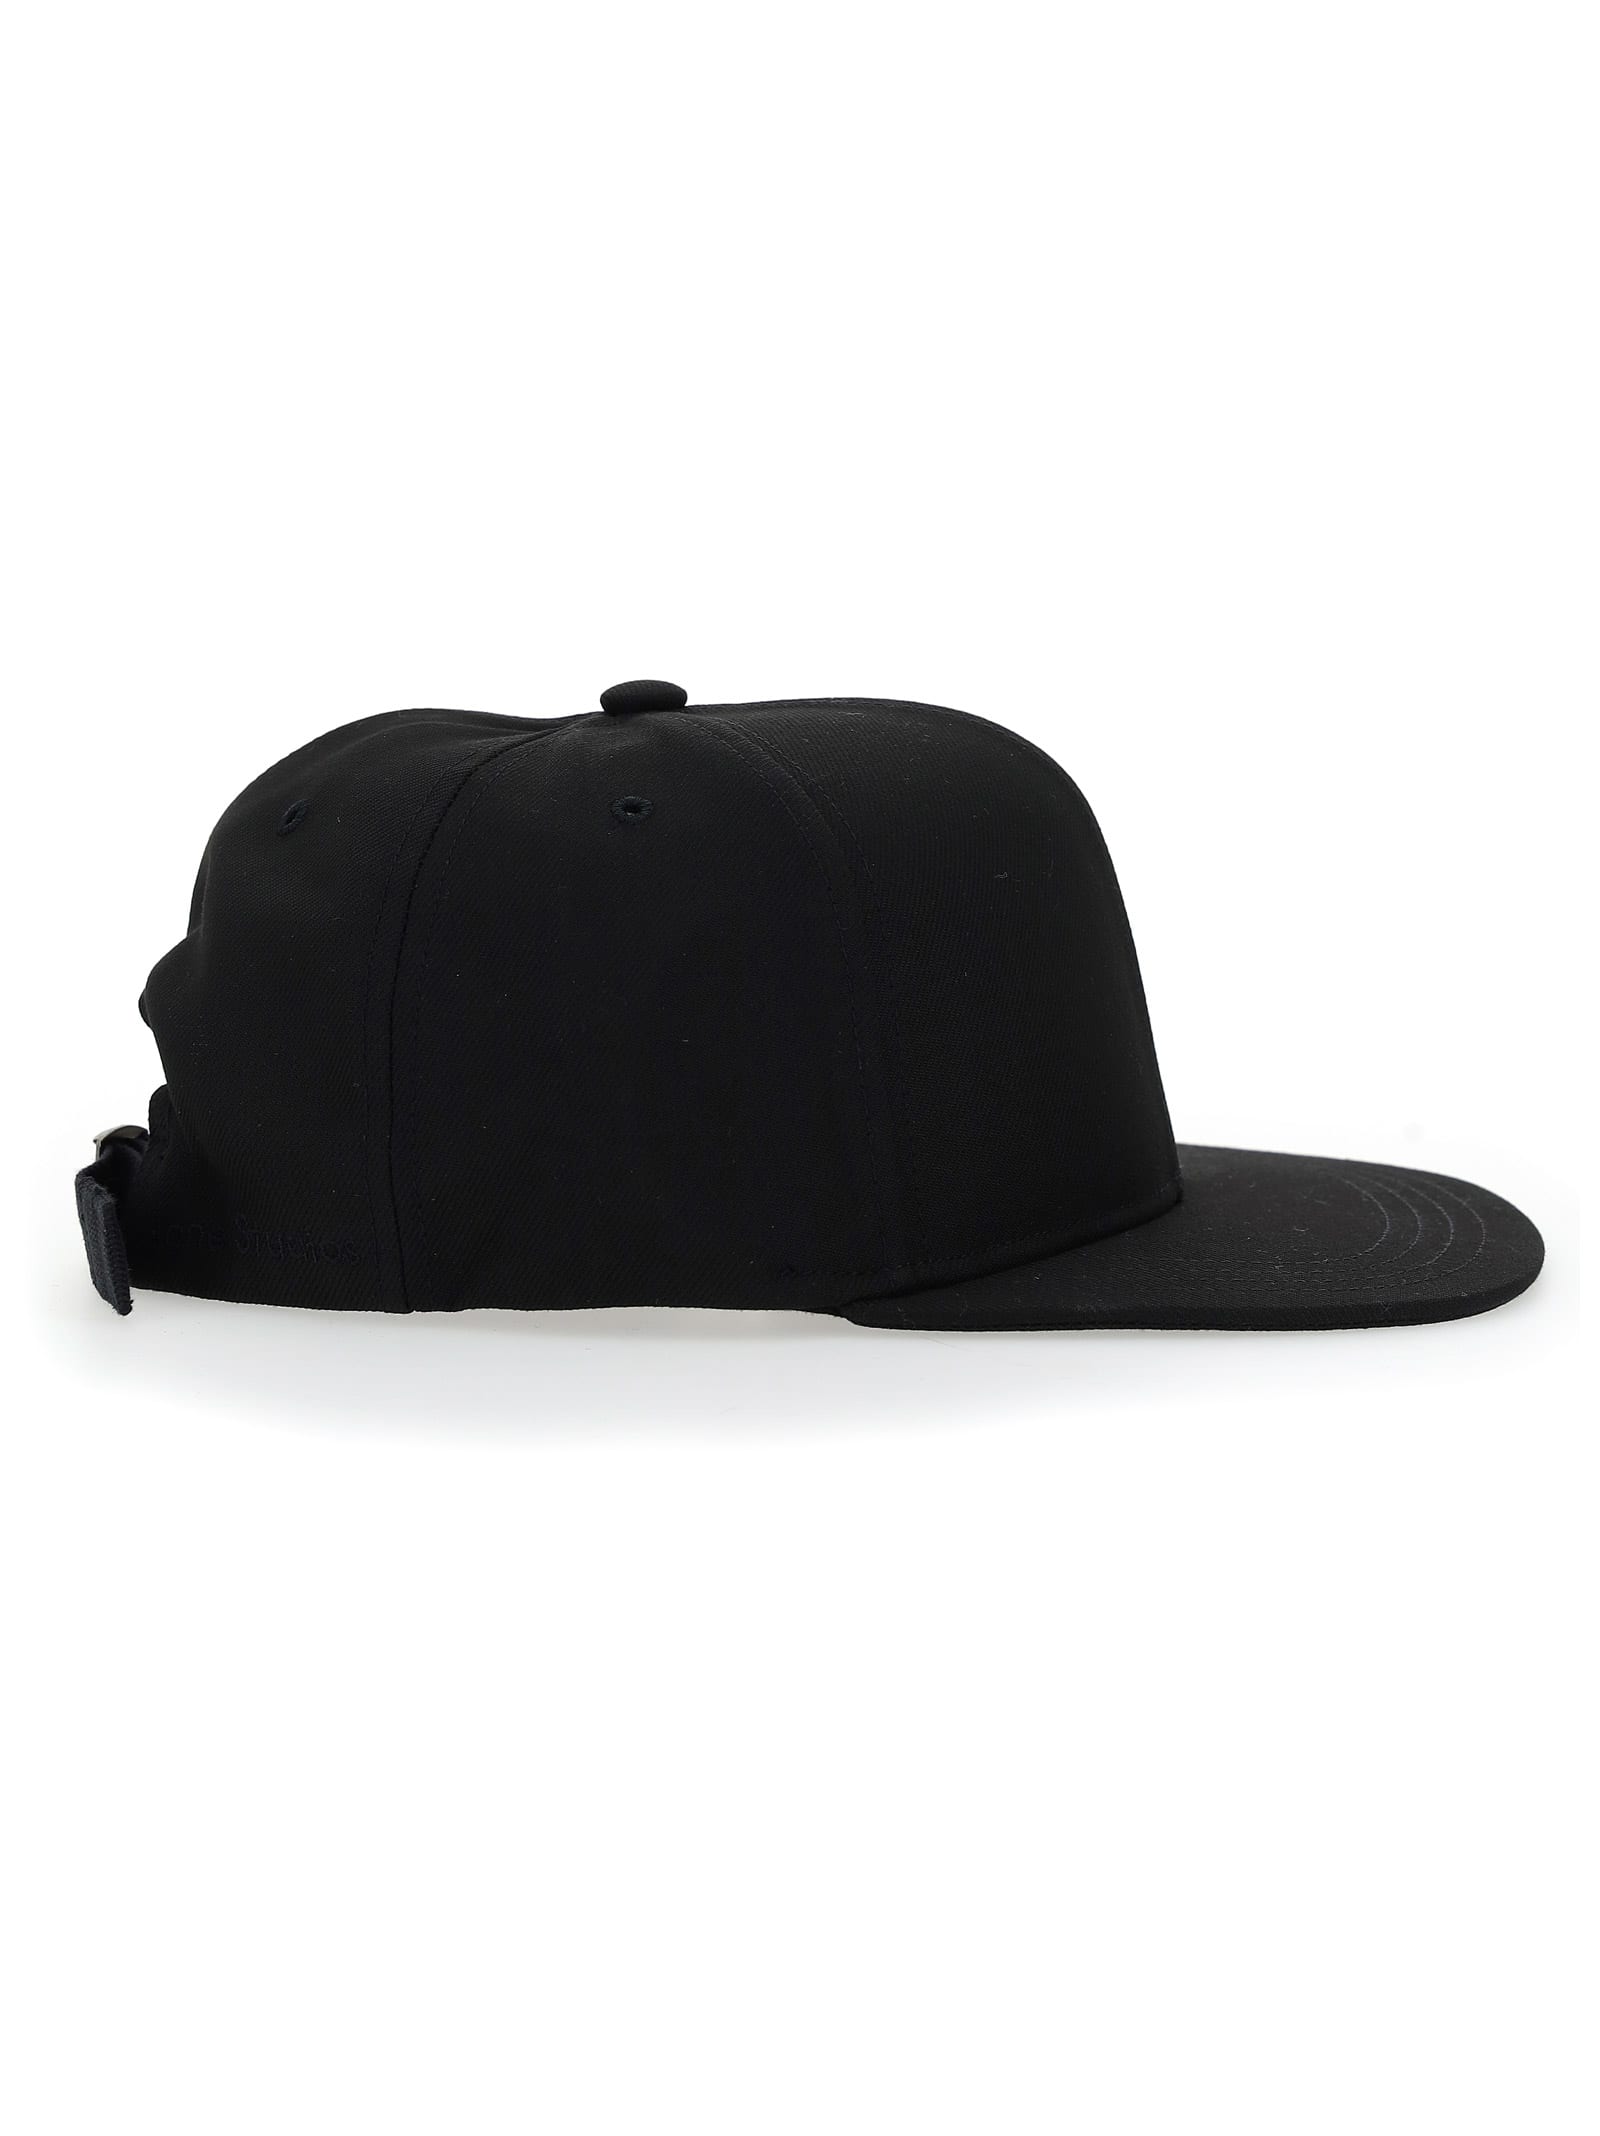 Off-white Bucket Hat In Black White